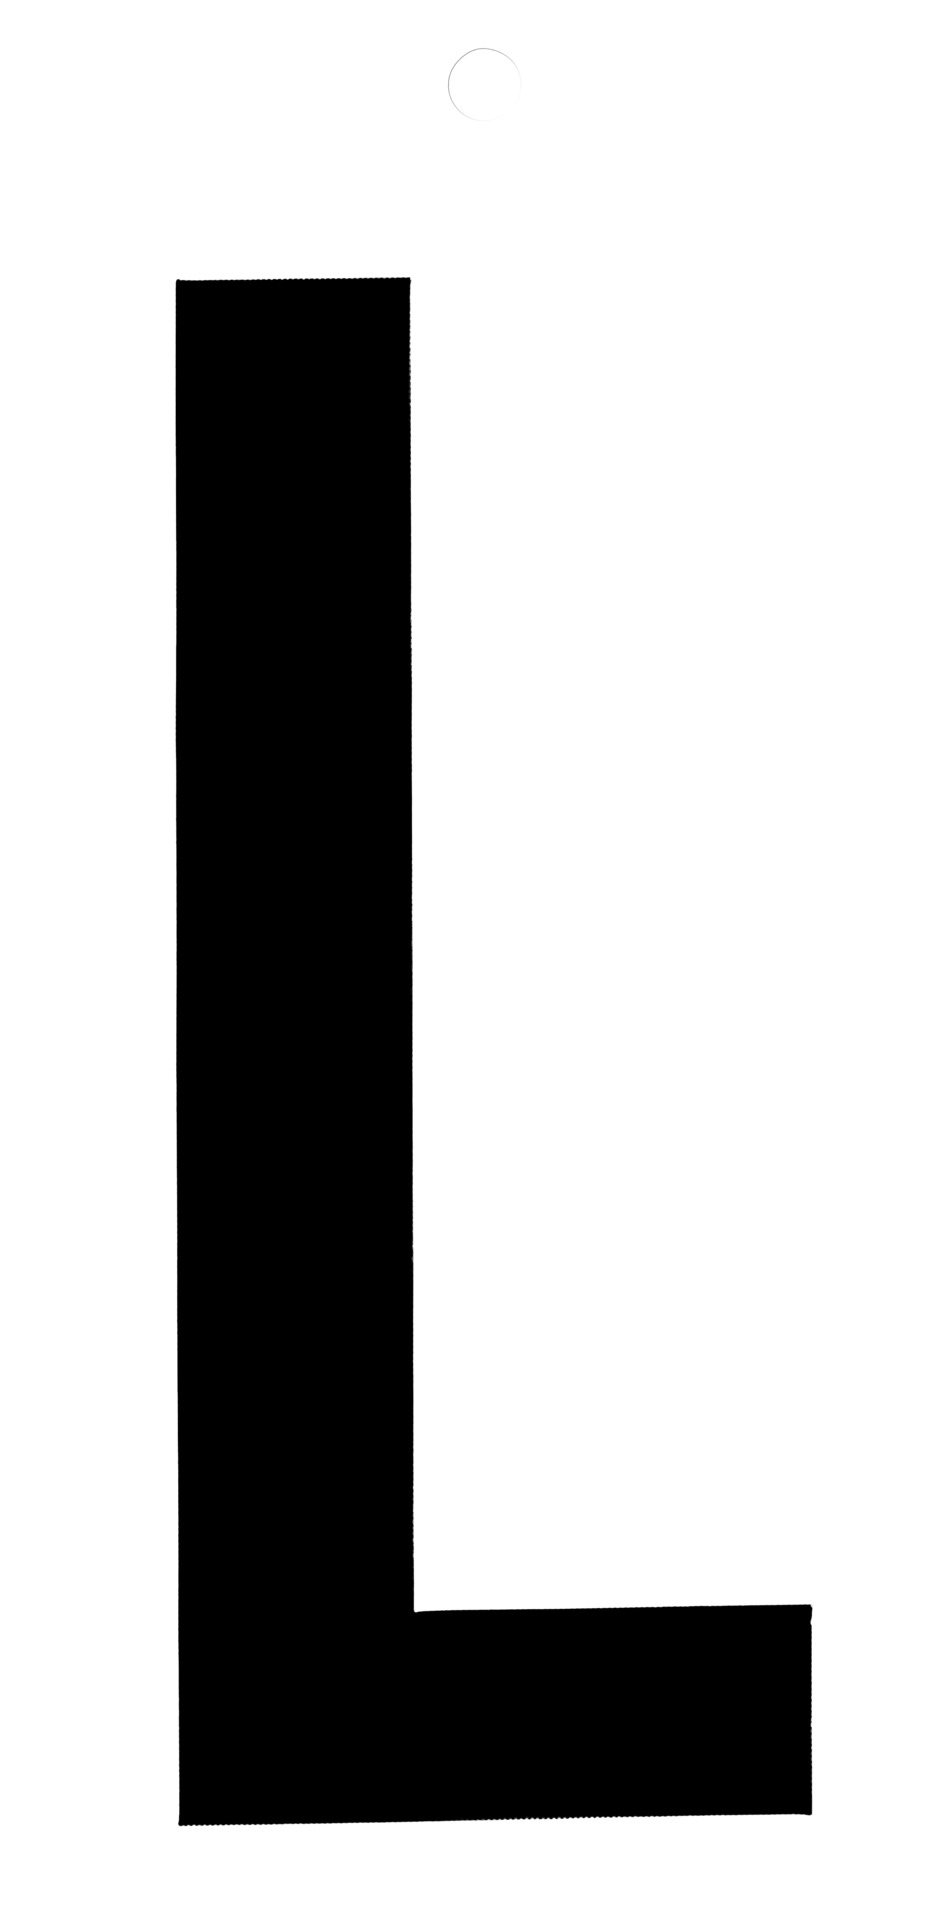 Klebefolien Lettern/Großbuchstaben schwarz